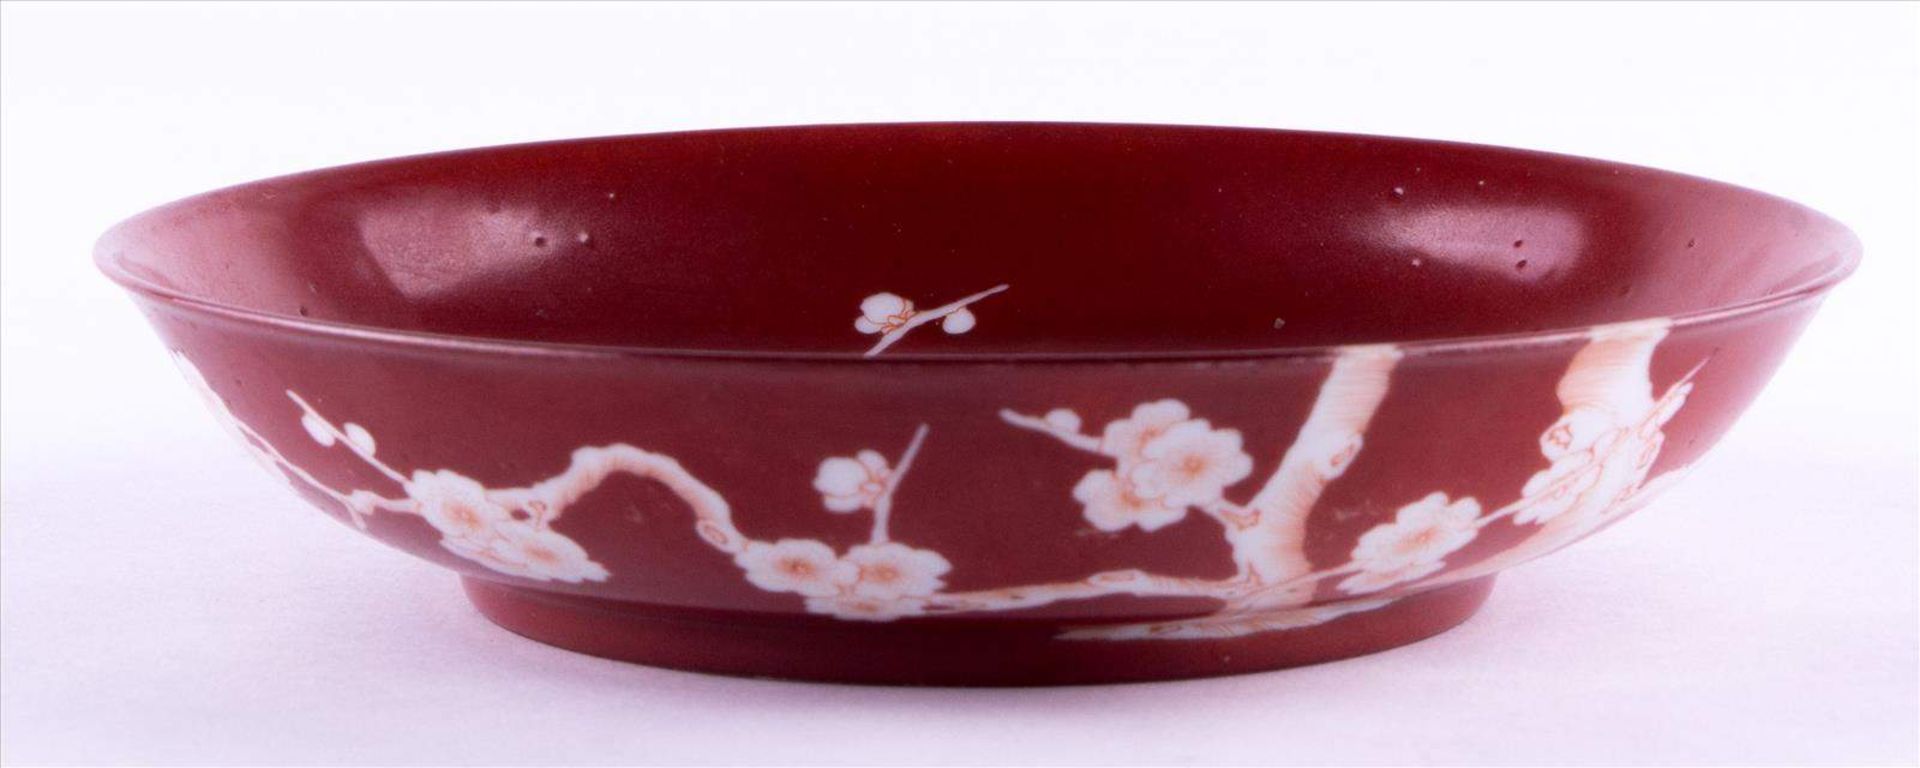 Schale China 19./20. Jhd. / Bowl, China 19th/20th century verziert mit Baum- und Blütendekor, unterm - Bild 2 aus 4